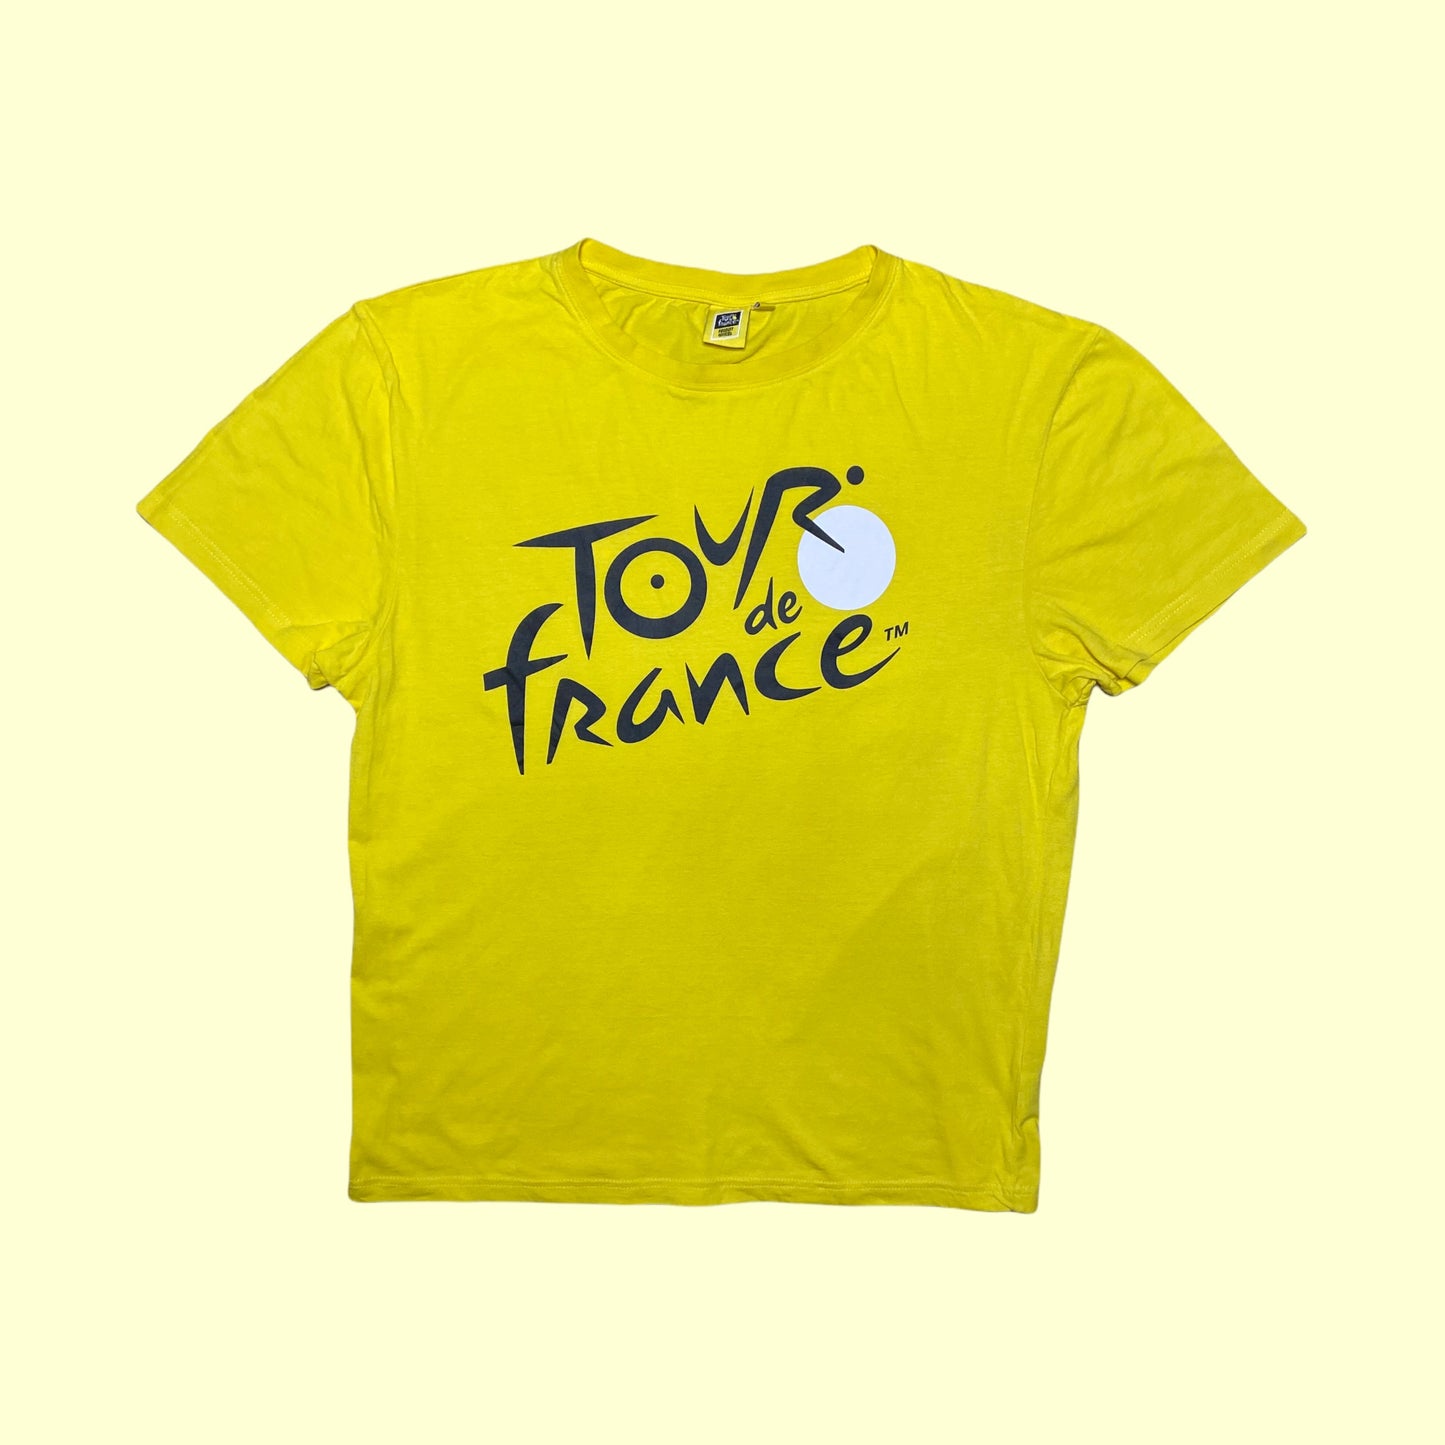 Tour de France T-Shirt - L/XL